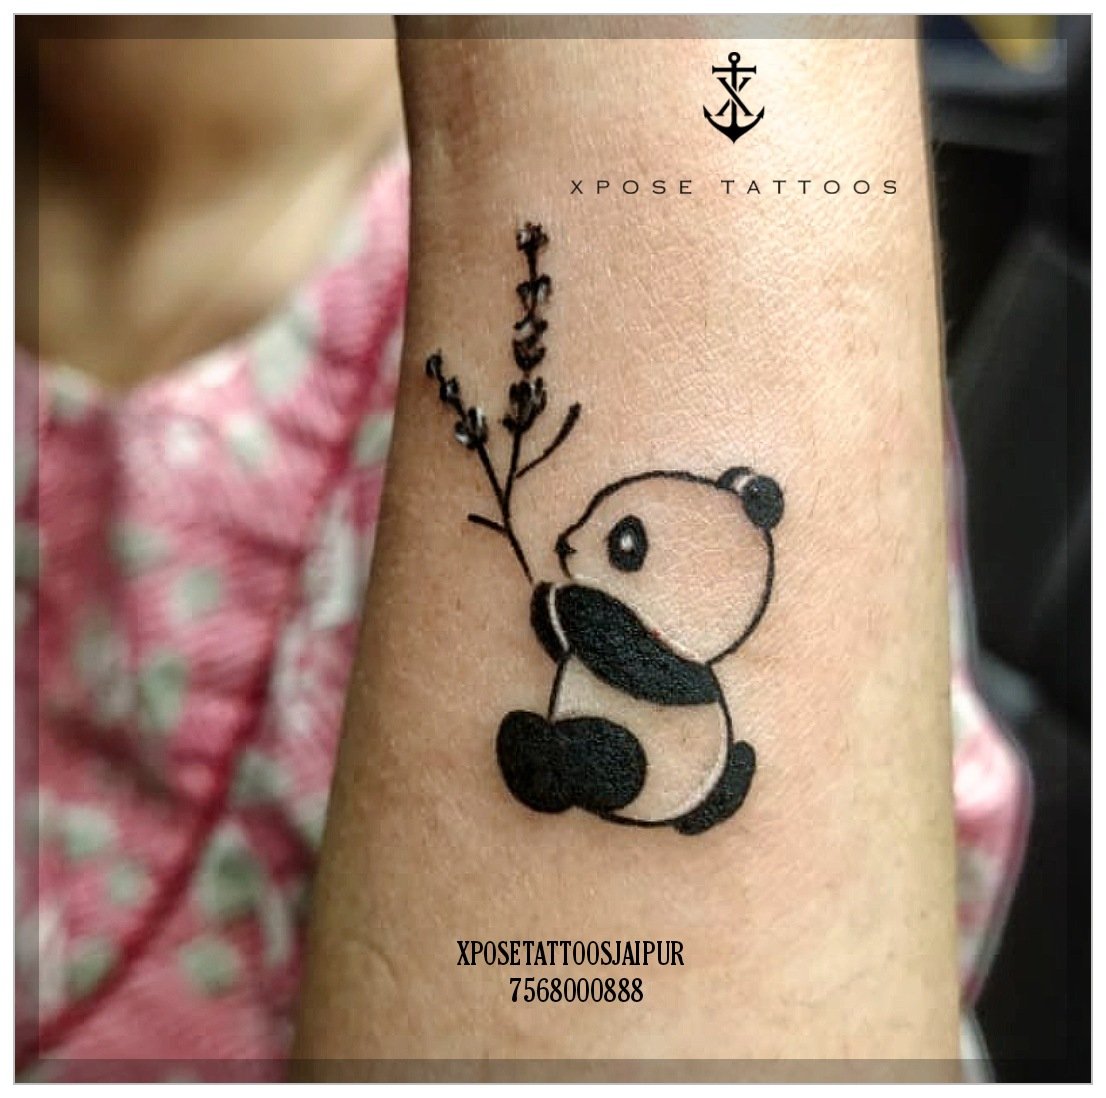 Tattoo uploaded by Samurai Tattoo mehsana  Panda tattoo Panda tattoo  ideas Tattoo for girls Girls tattoo Small tattoo  Tattoodo